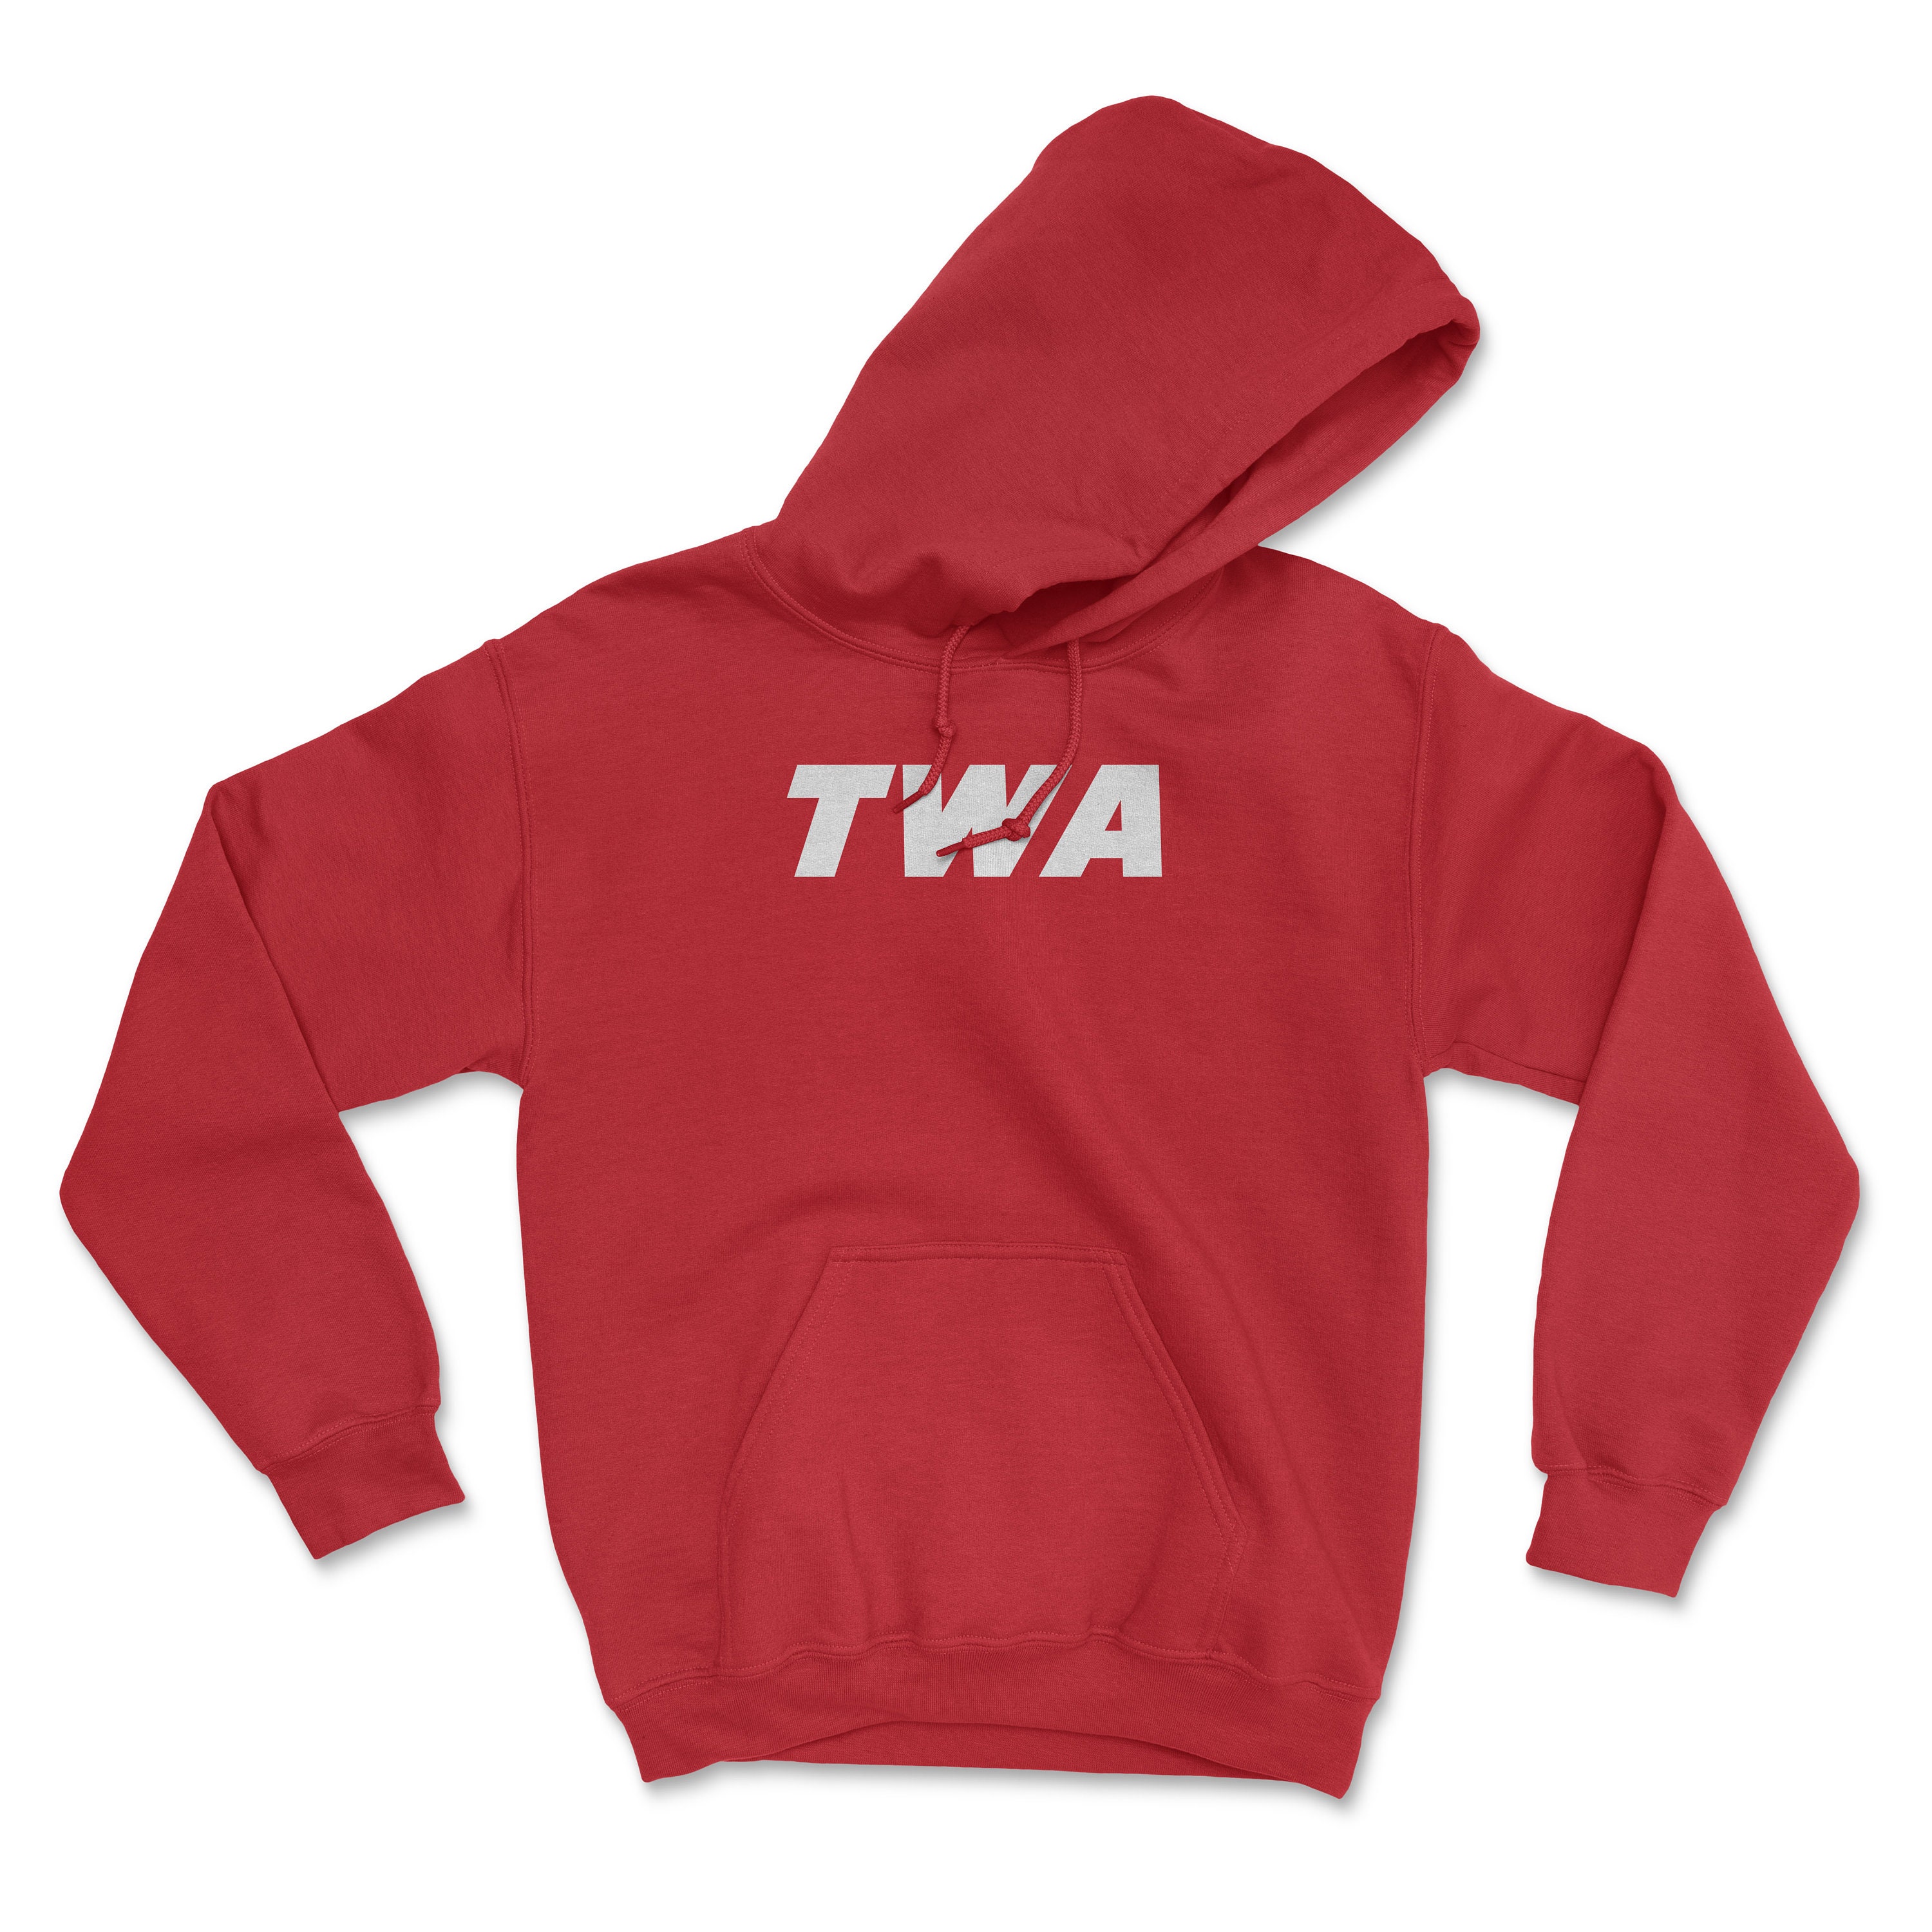 Twa unisex hoodie for sale  